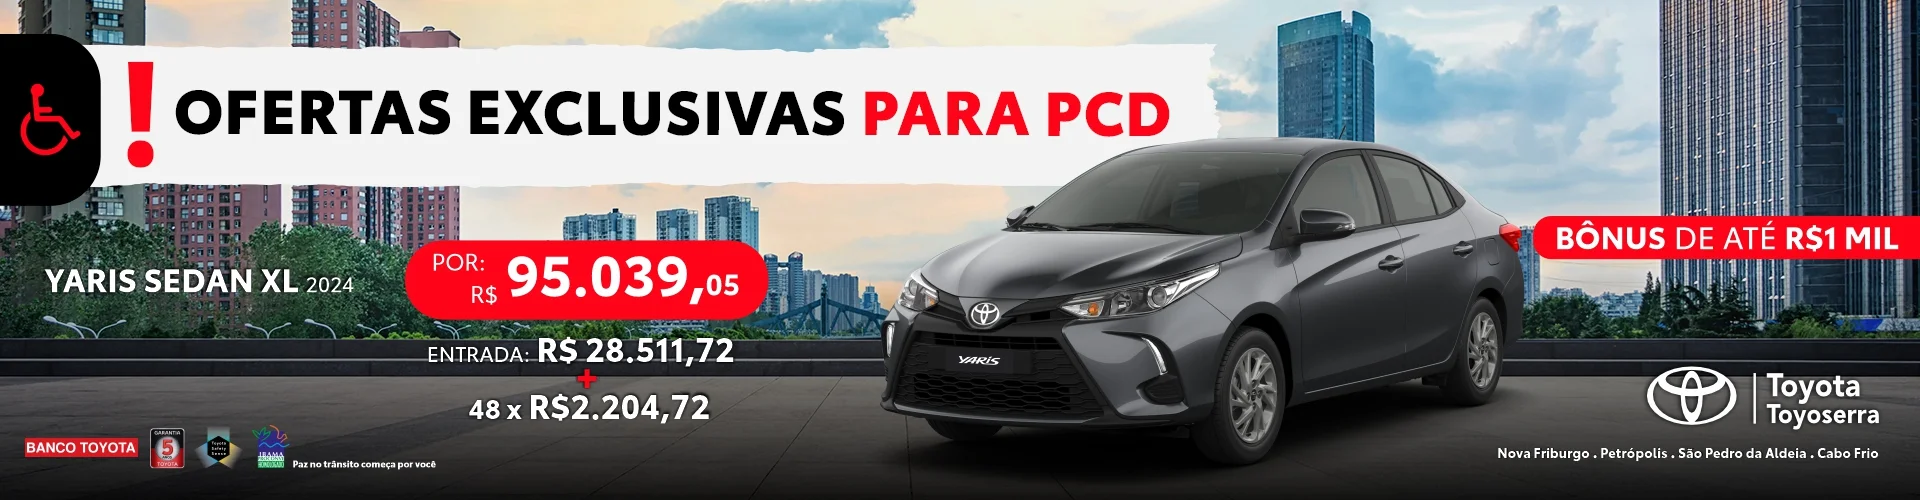 Ofertas Exclusivas para veículos Toyota para PCD na Toyoserra